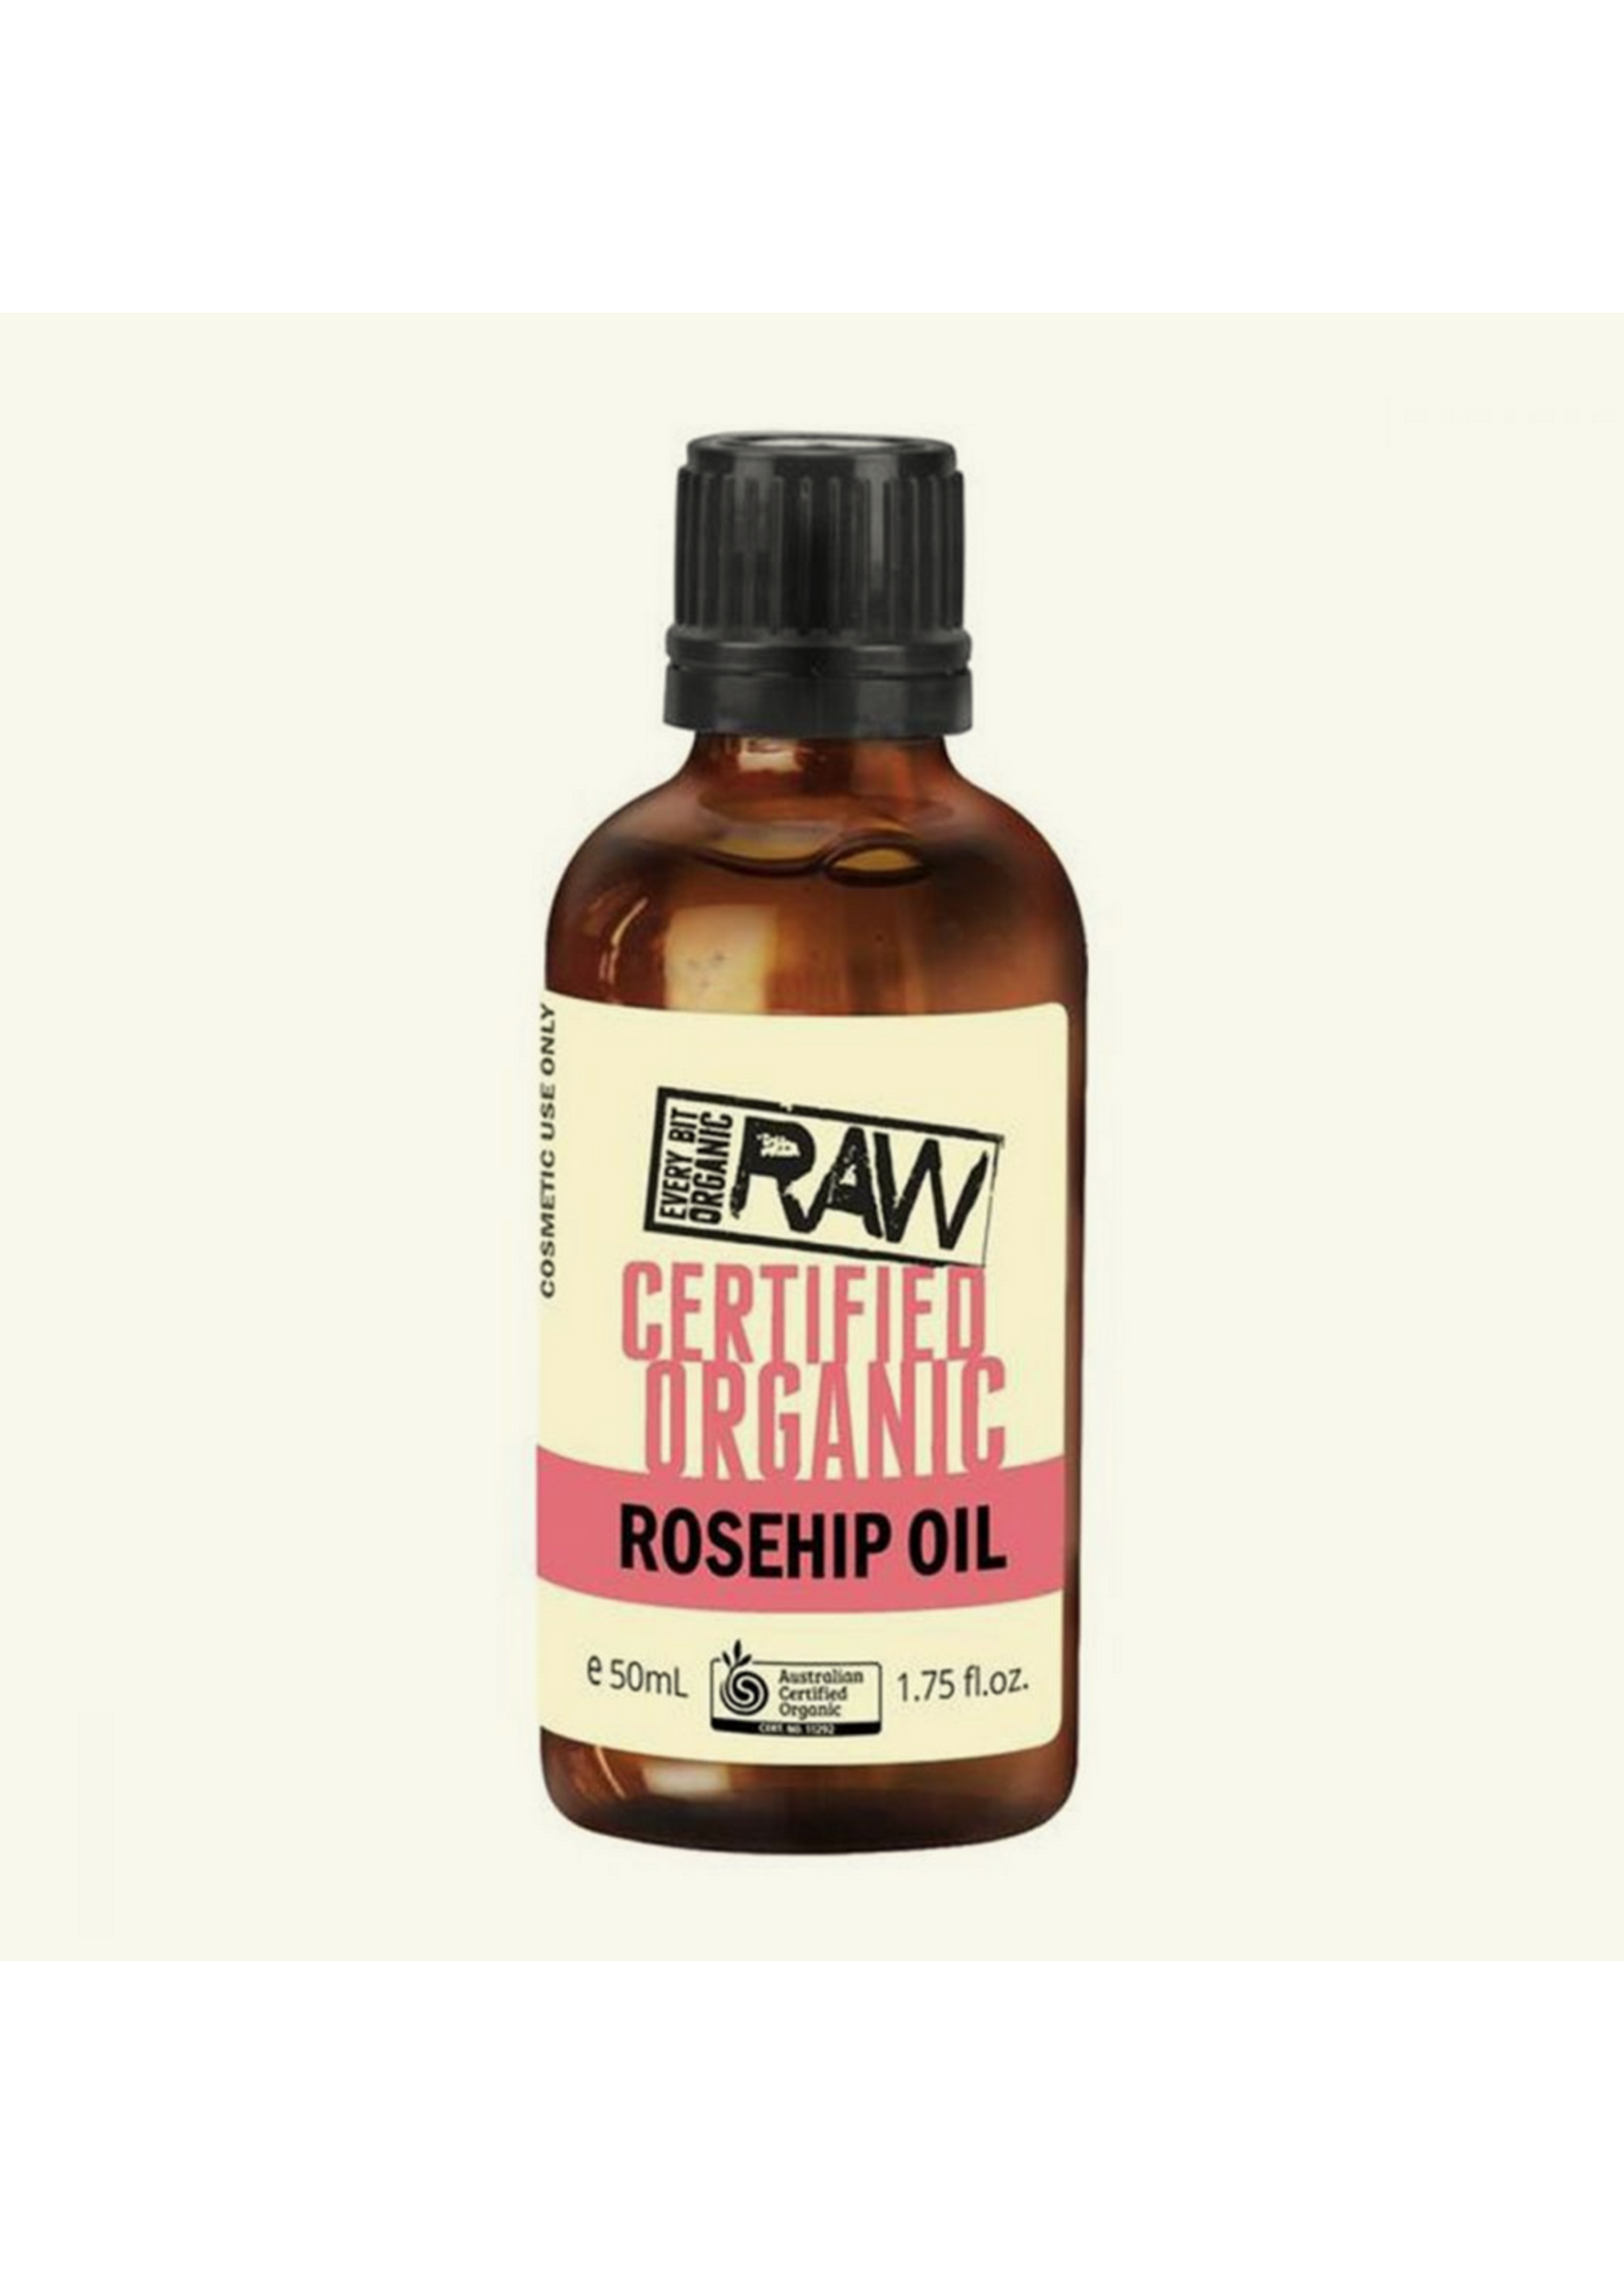 EVERY BIT ORGANIC RAW Every Bit Organic Raw Rosehip Oil 50ml